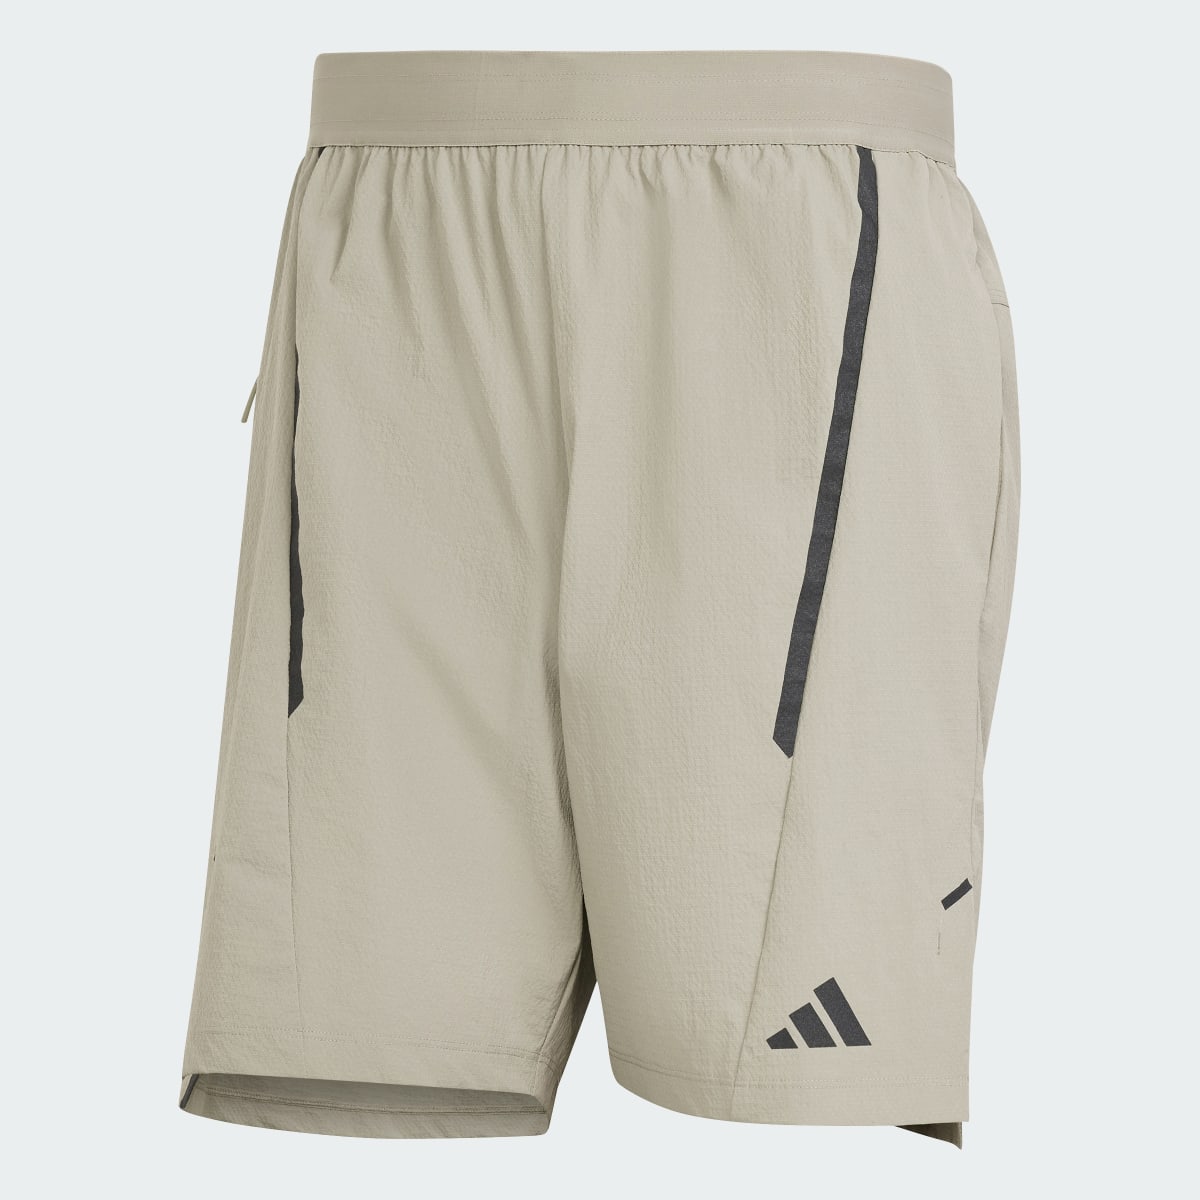 Adidas Designed for Training Workout Shorts. 4